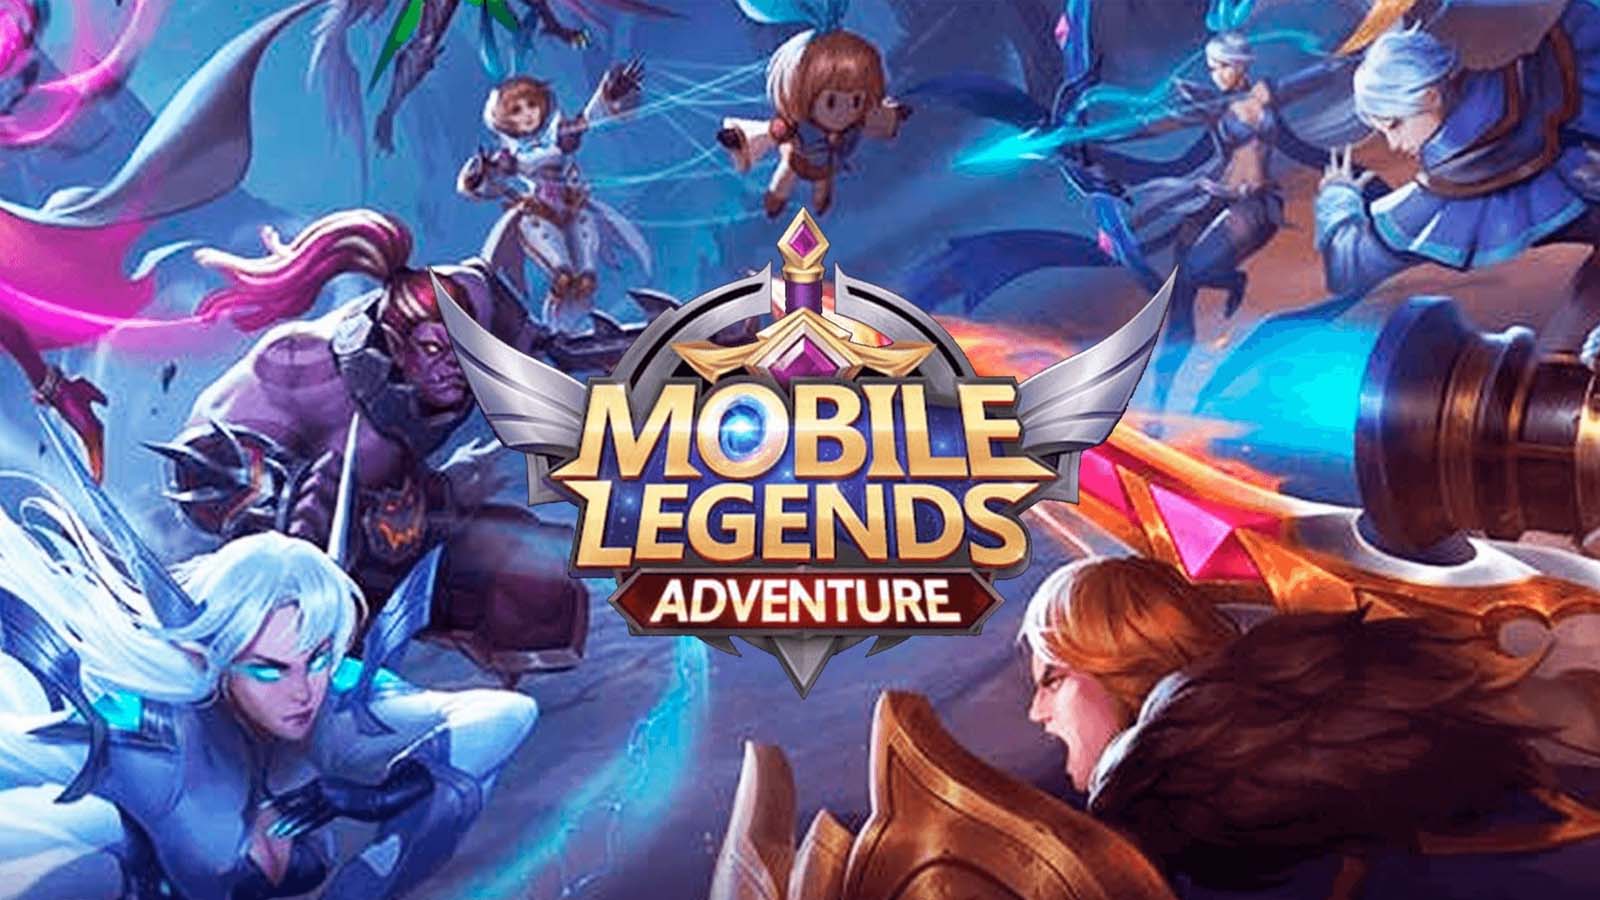 Патч 1.6.84 для Mobile Legends: главные изменения